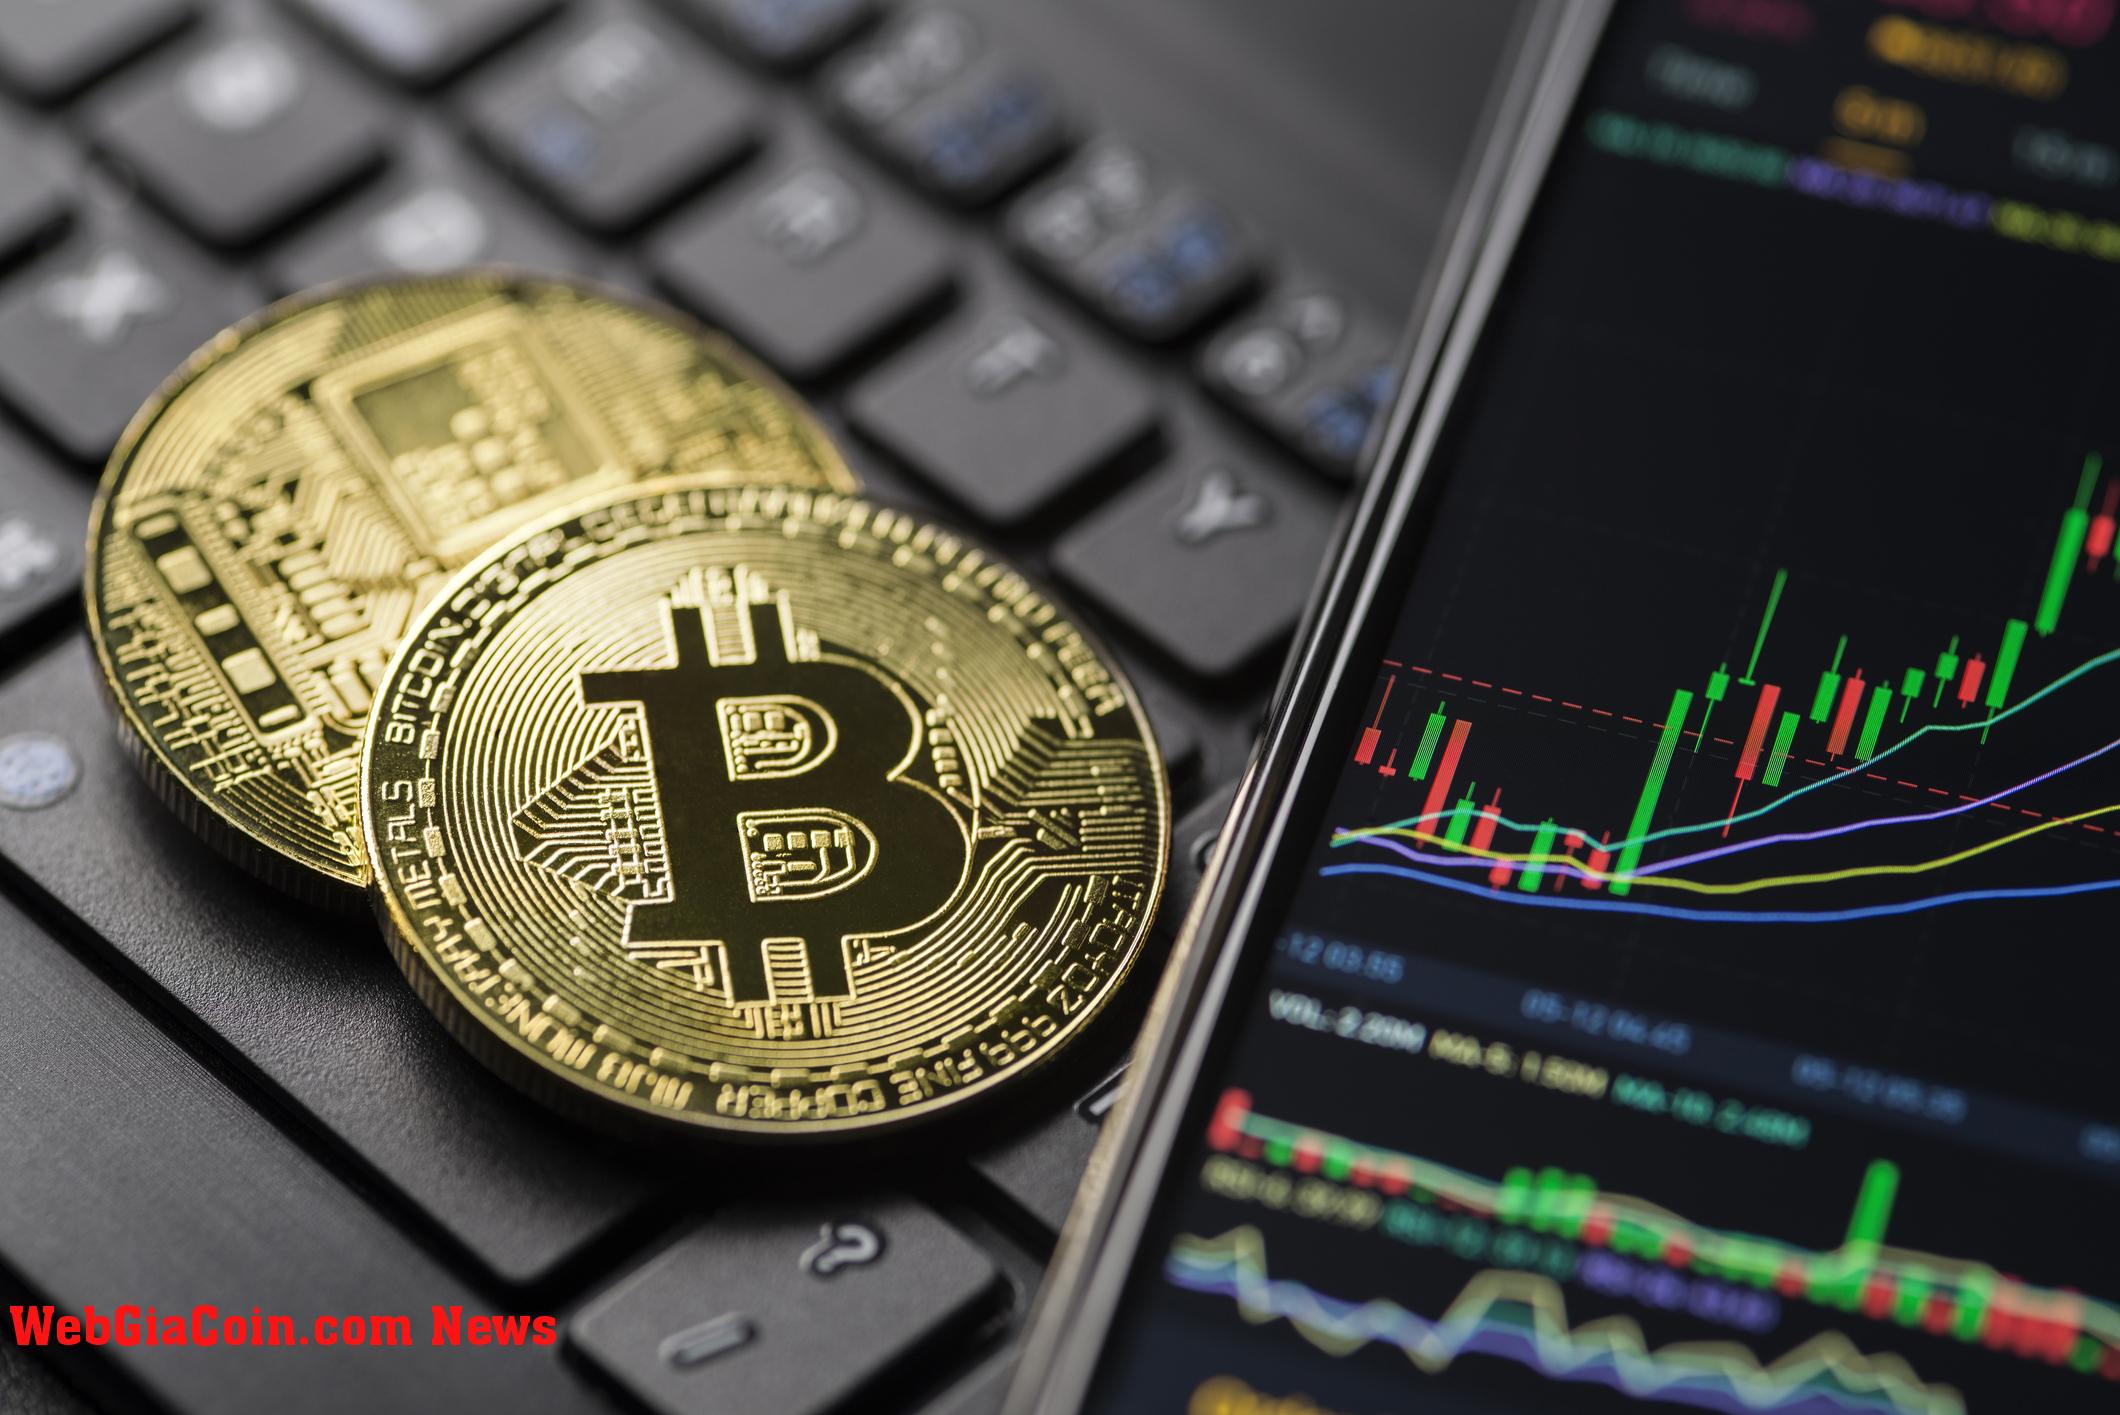 Nhà phân tích tiền điện tử dự đoán xu hướng tiềm năng của Bitcoin khi giá trượt